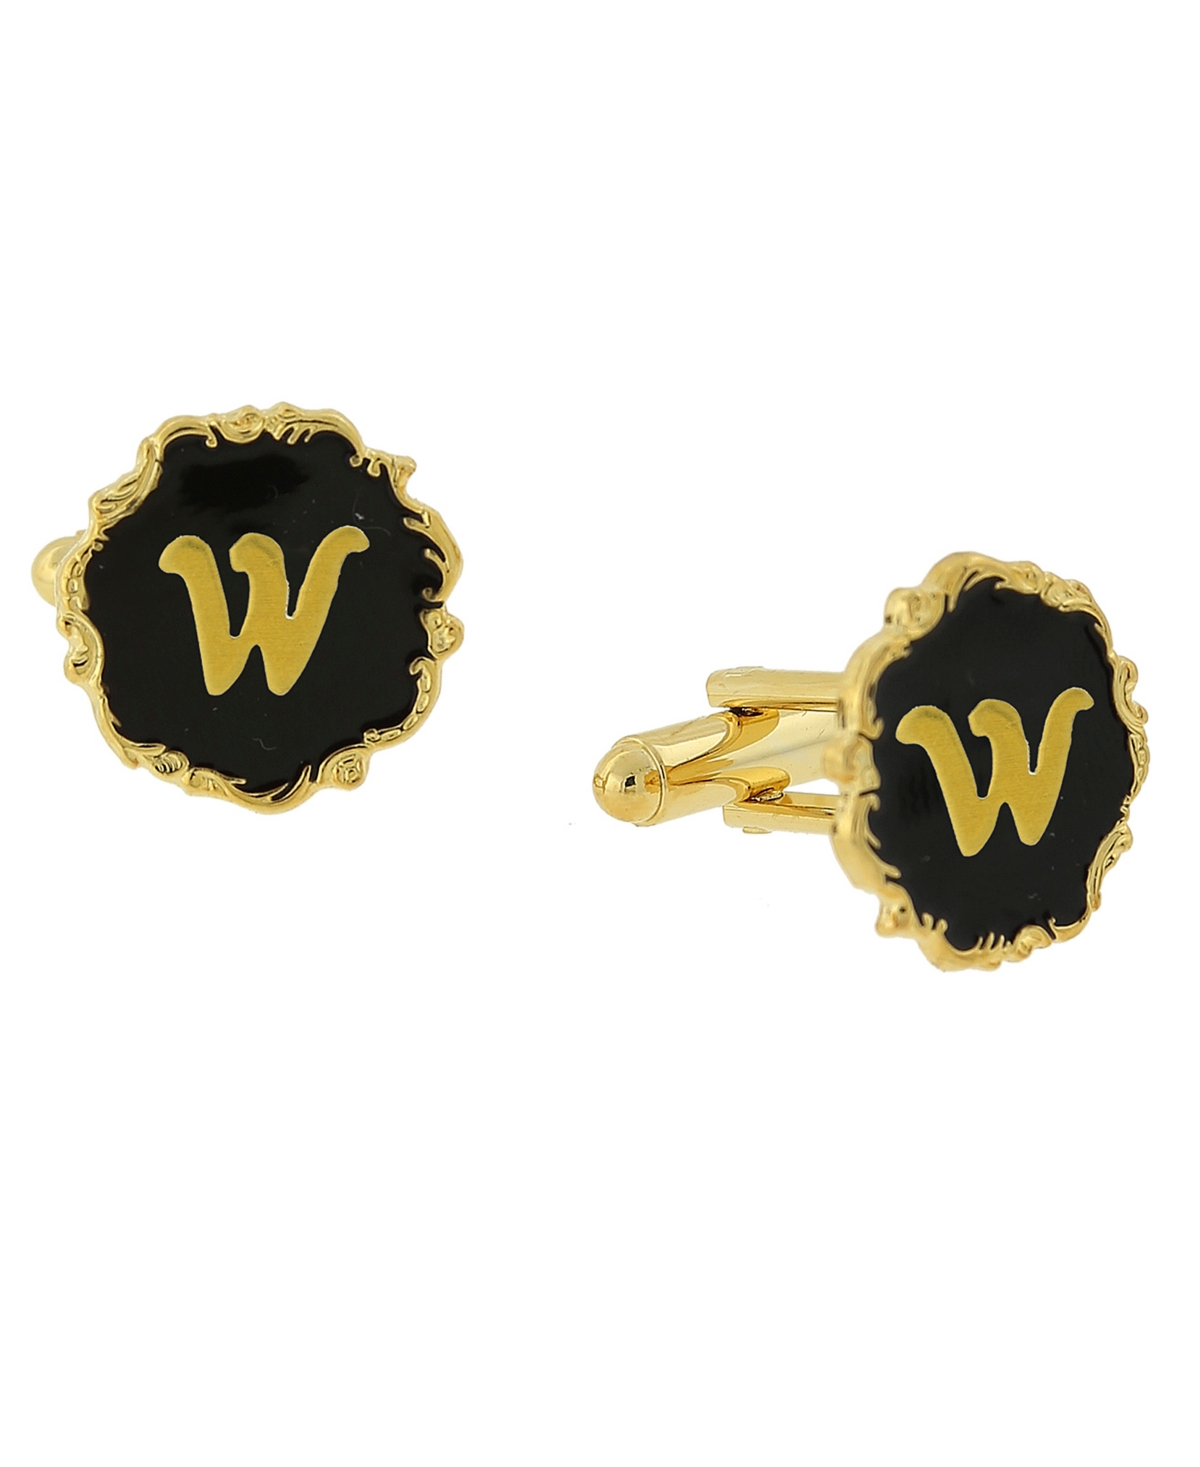 1928 Jewelry 14k Gold-plated Enamel Initial W Cufflinks In Black